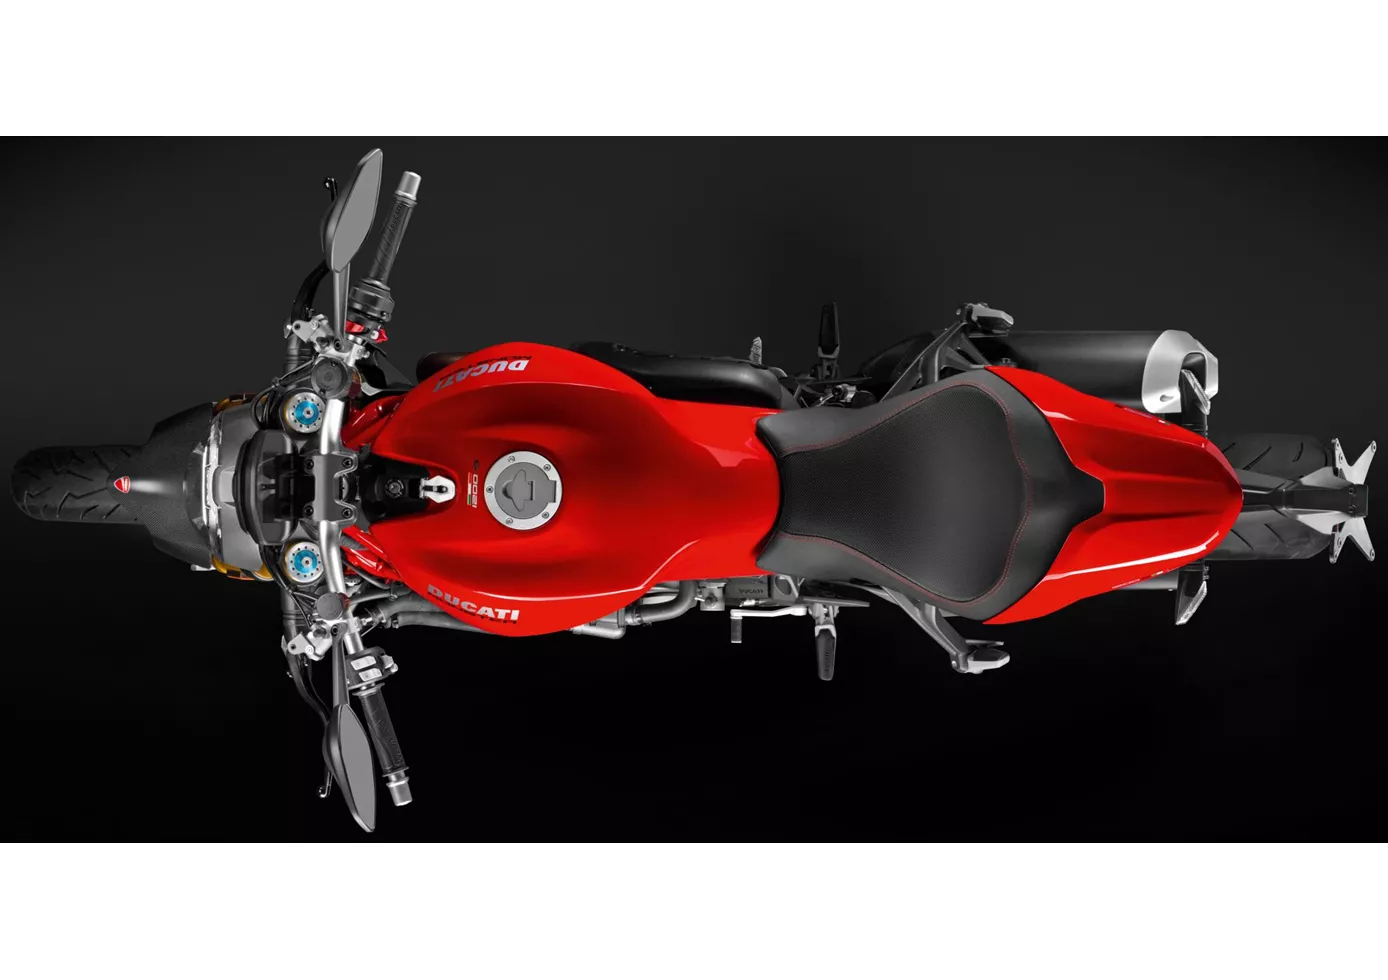 Ducati Monster 1200 2019